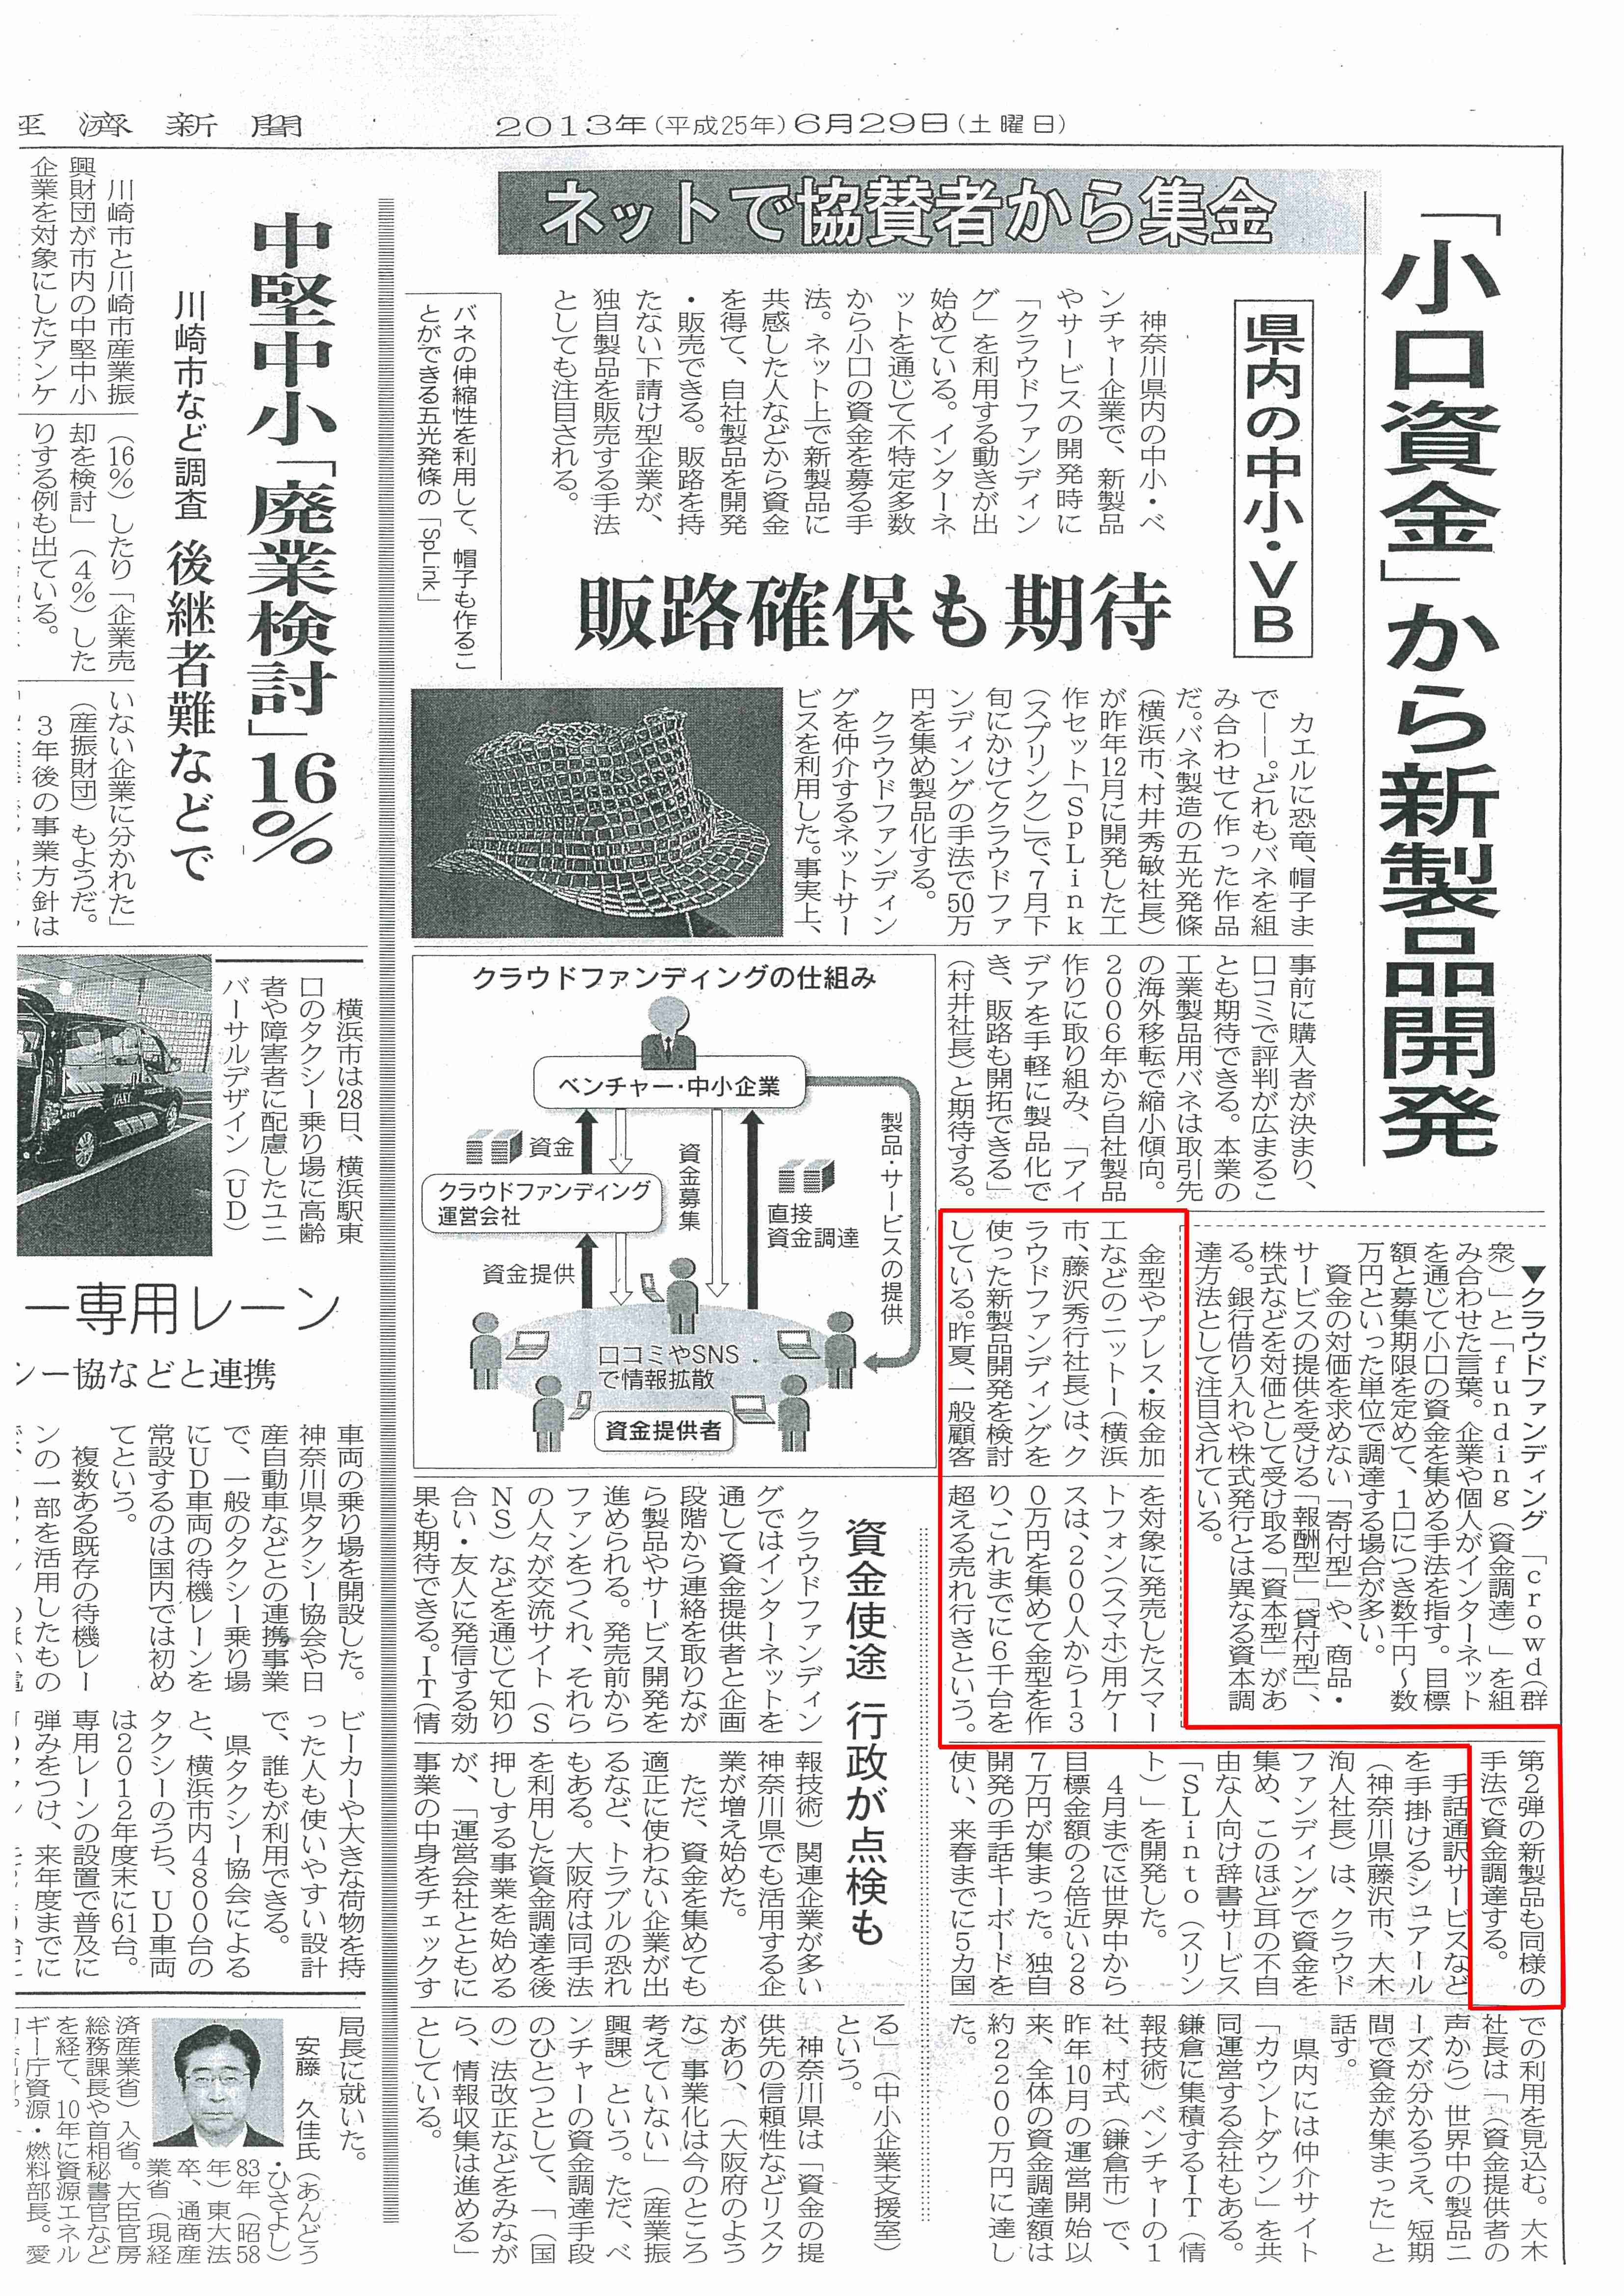 6月29日『日本経済新聞』に掲載